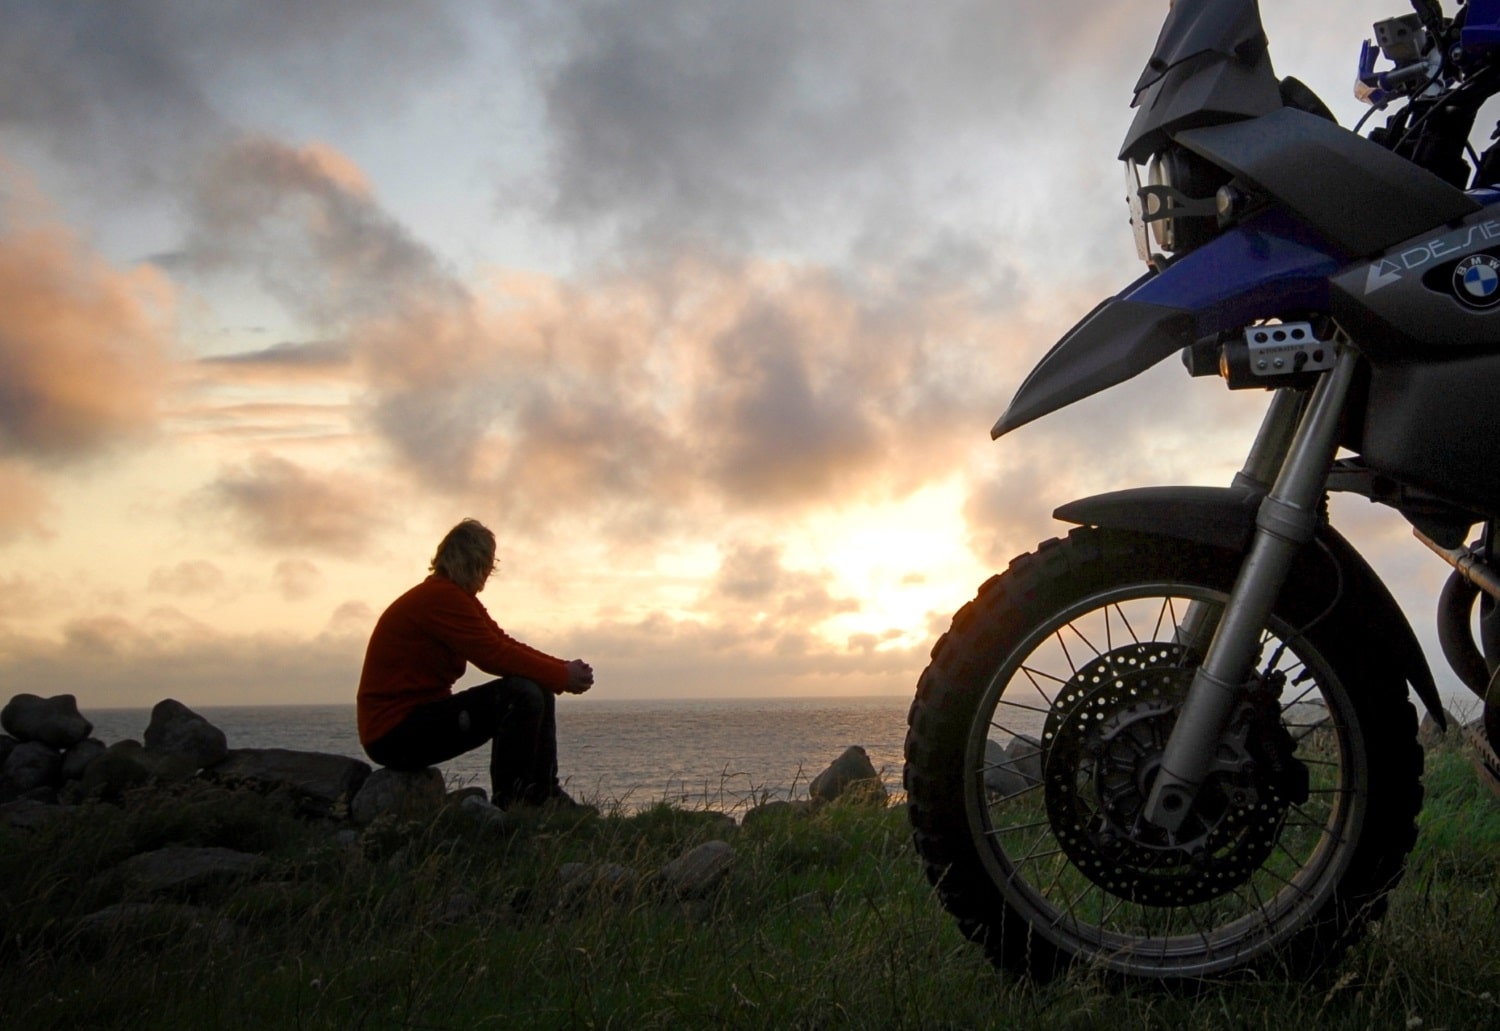 Moto-pneumatici.it chiama a raccolta i motociclisti per la terza “Biker Summer 2015” 6